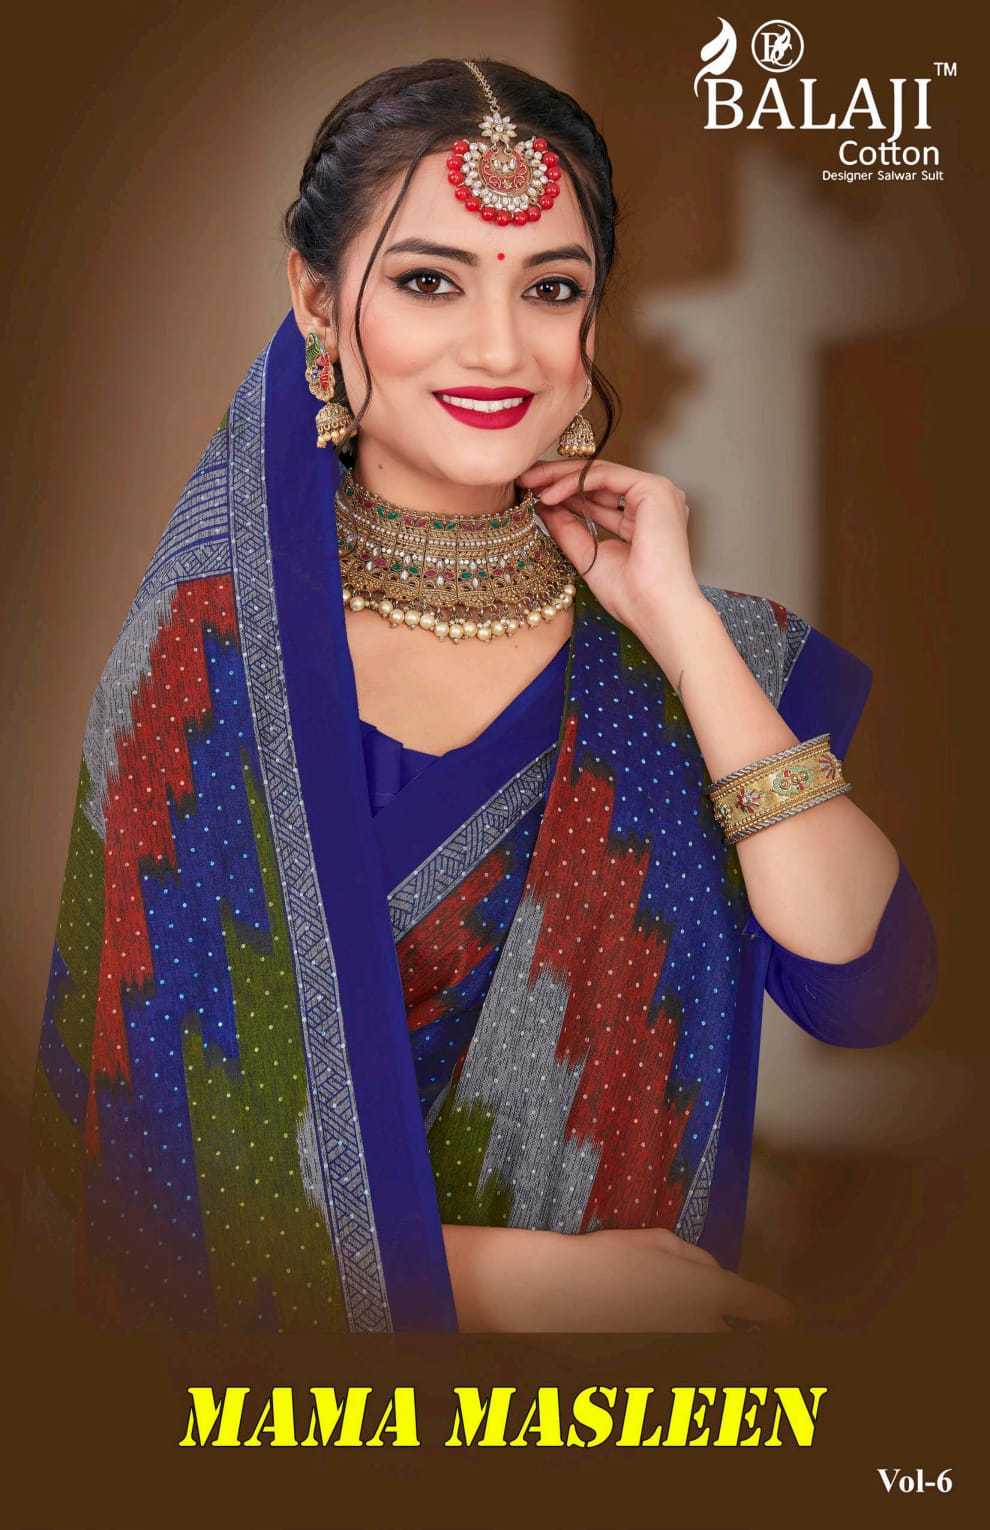 balaji cotton mama masleen vol 6 regular wear saree supplier 